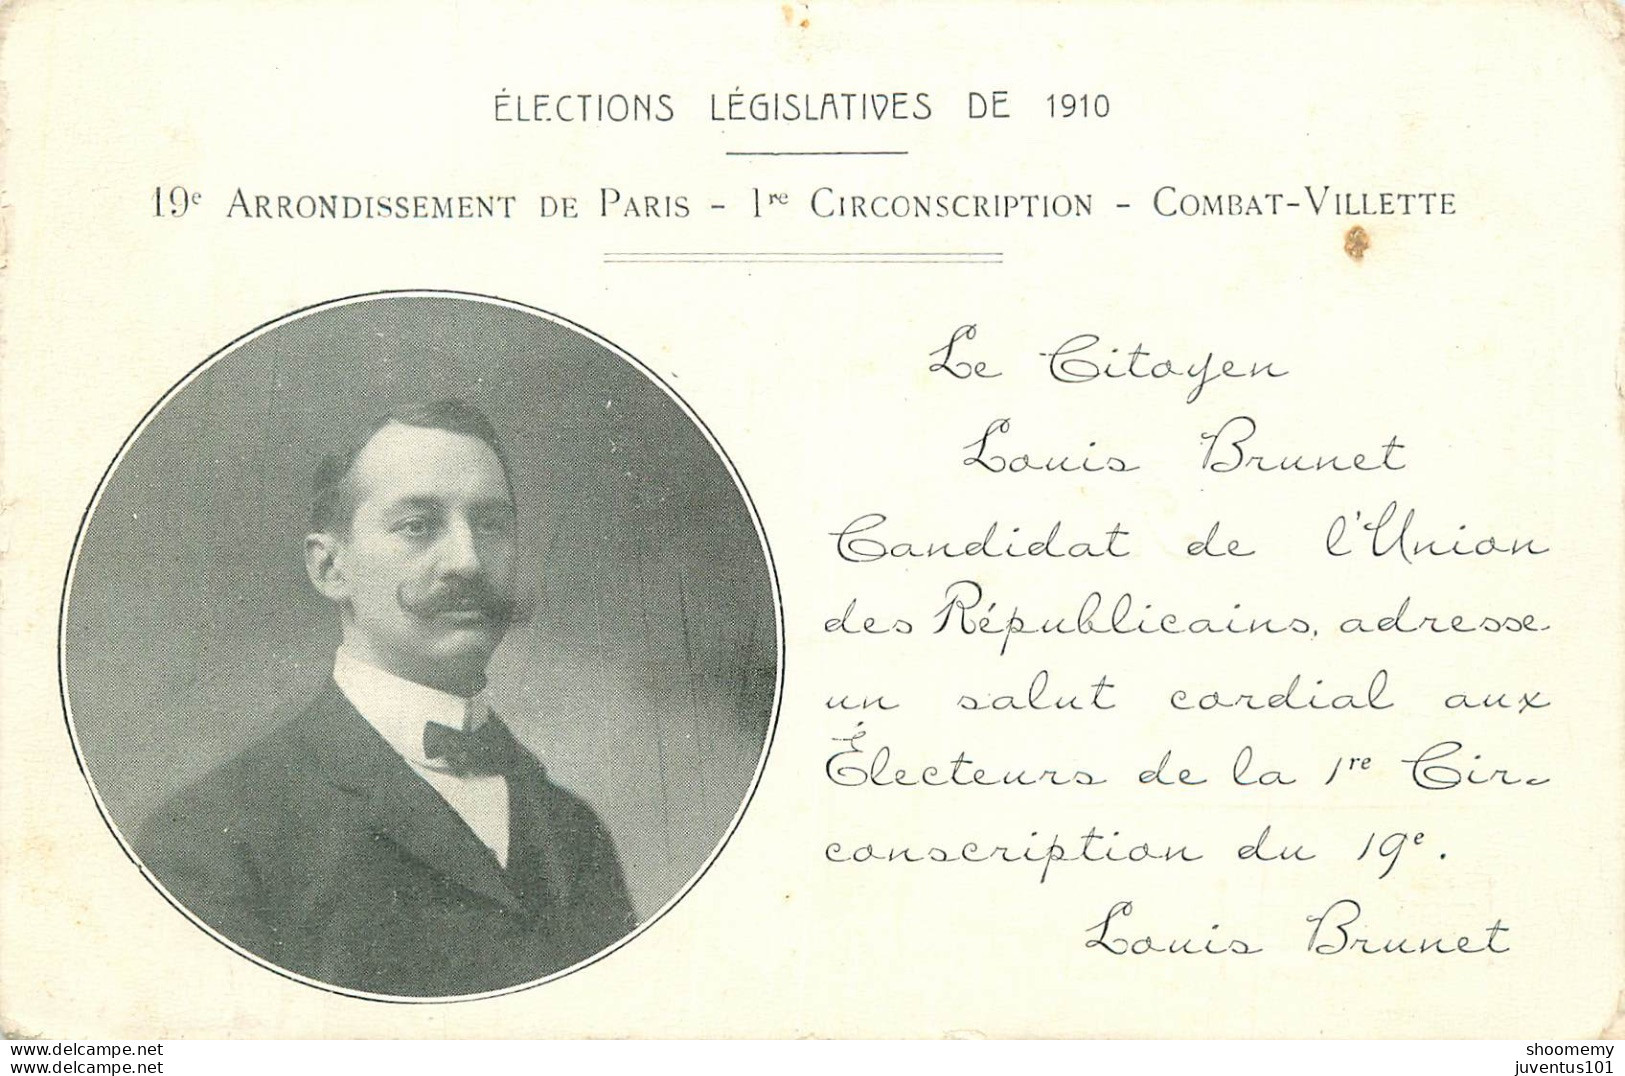 CPA Elections Législatives De 1910-Paris-19e Arrondissement-La Villette-Combat-Louis Brunet   L2223 - Partis Politiques & élections